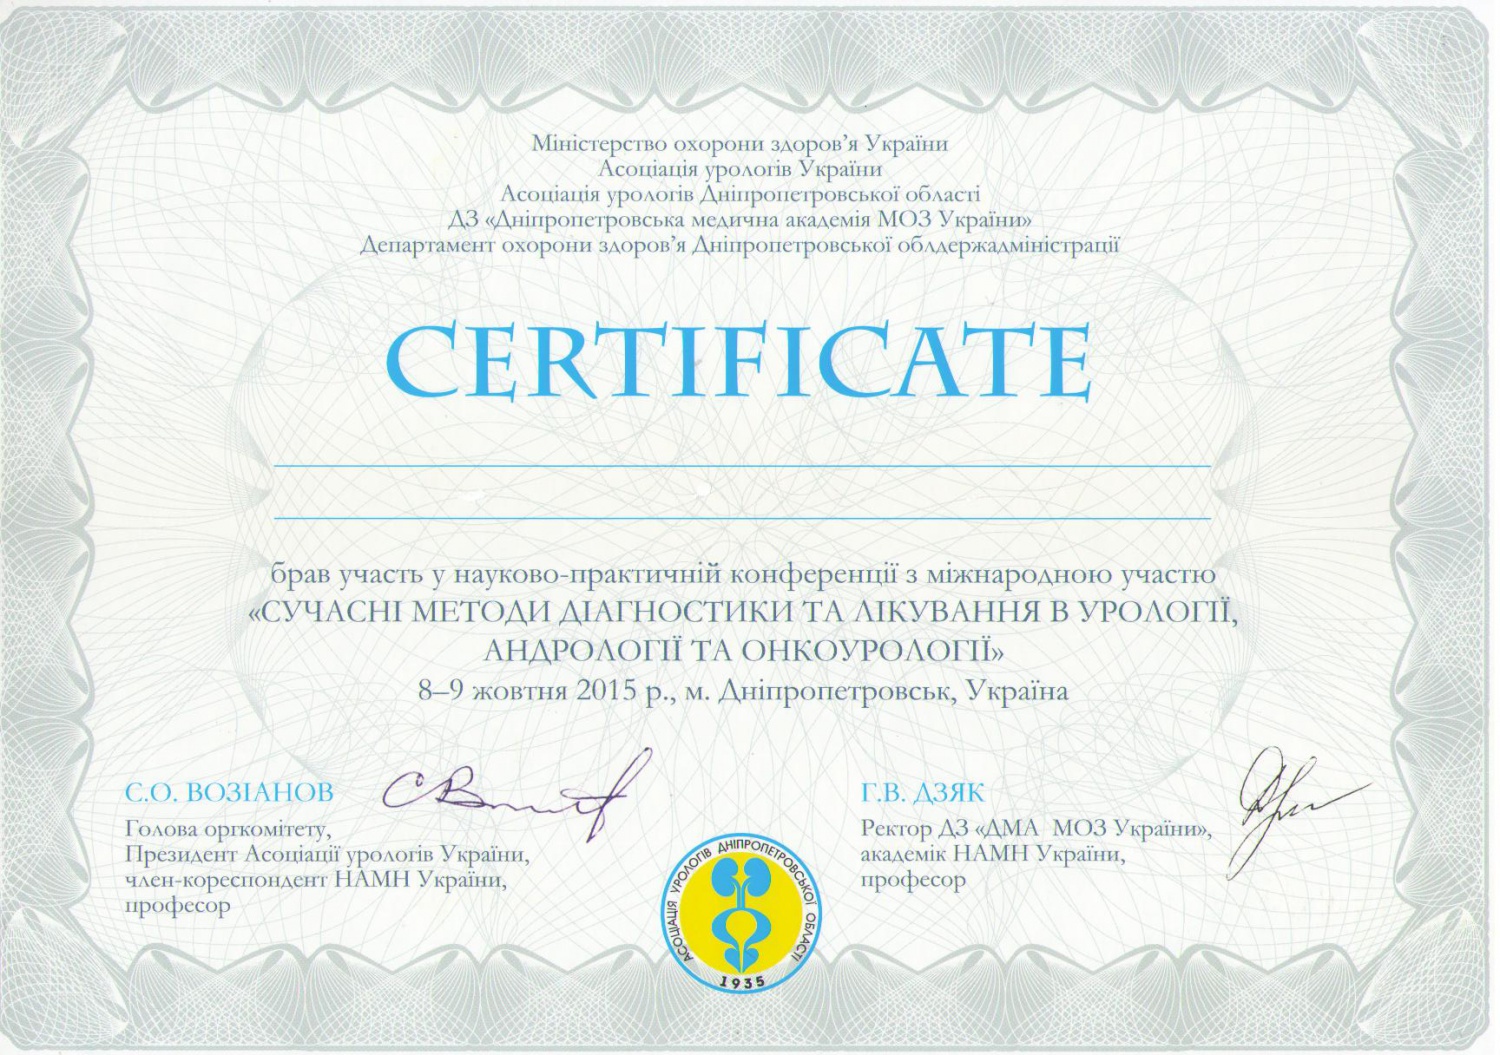 Когут В.В. - Сертифікат про участь конференції (2015 г.)